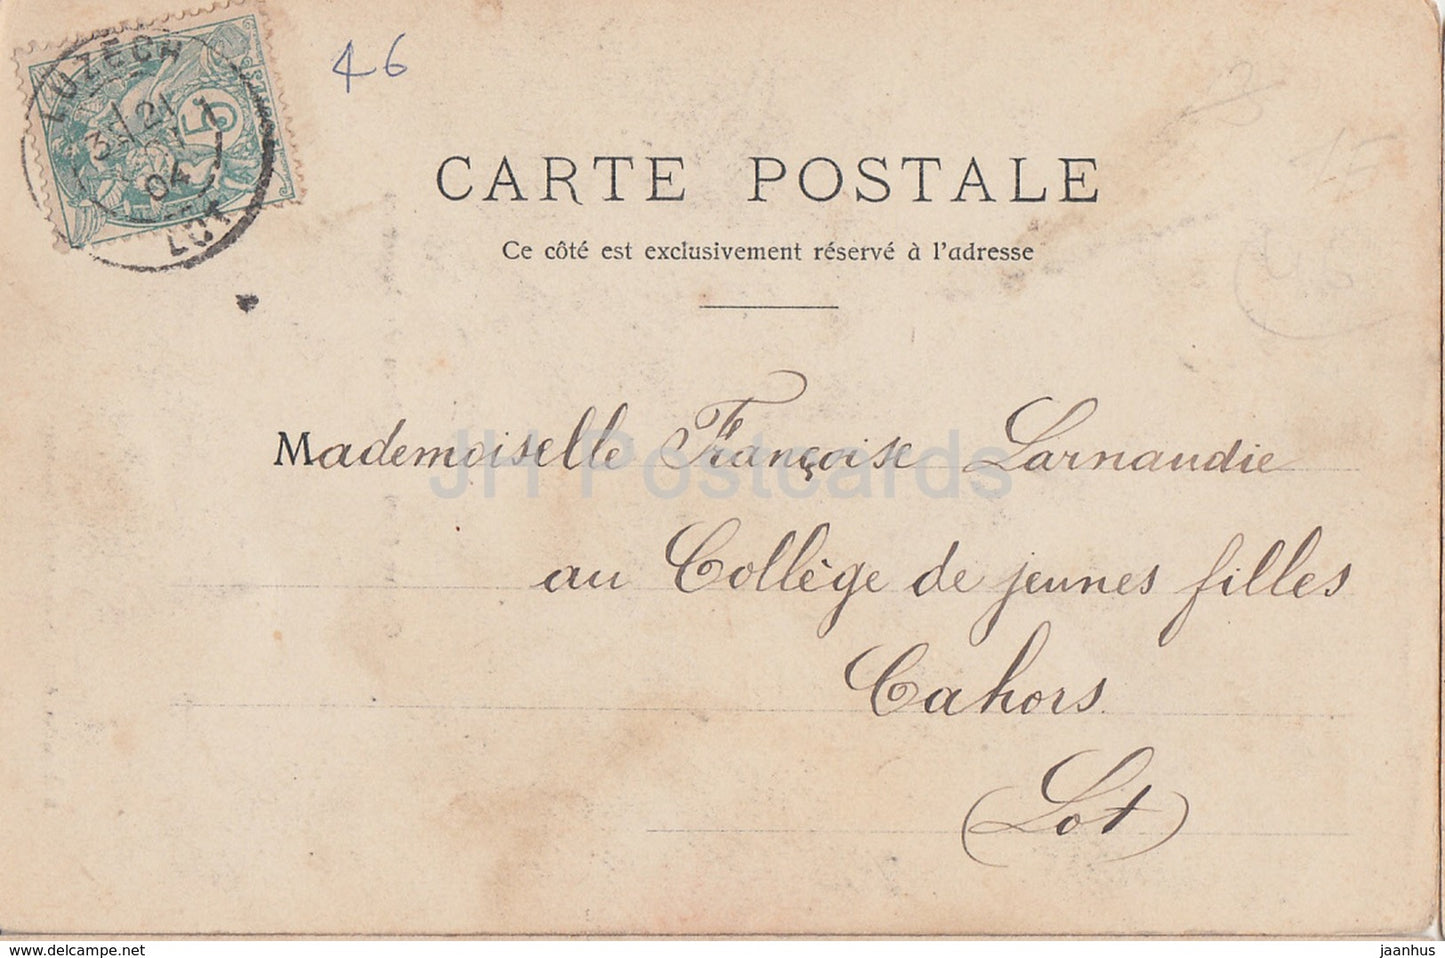 Caillac - Château de Lagrezette - château - carte postale ancienne - 1904 - France - occasion